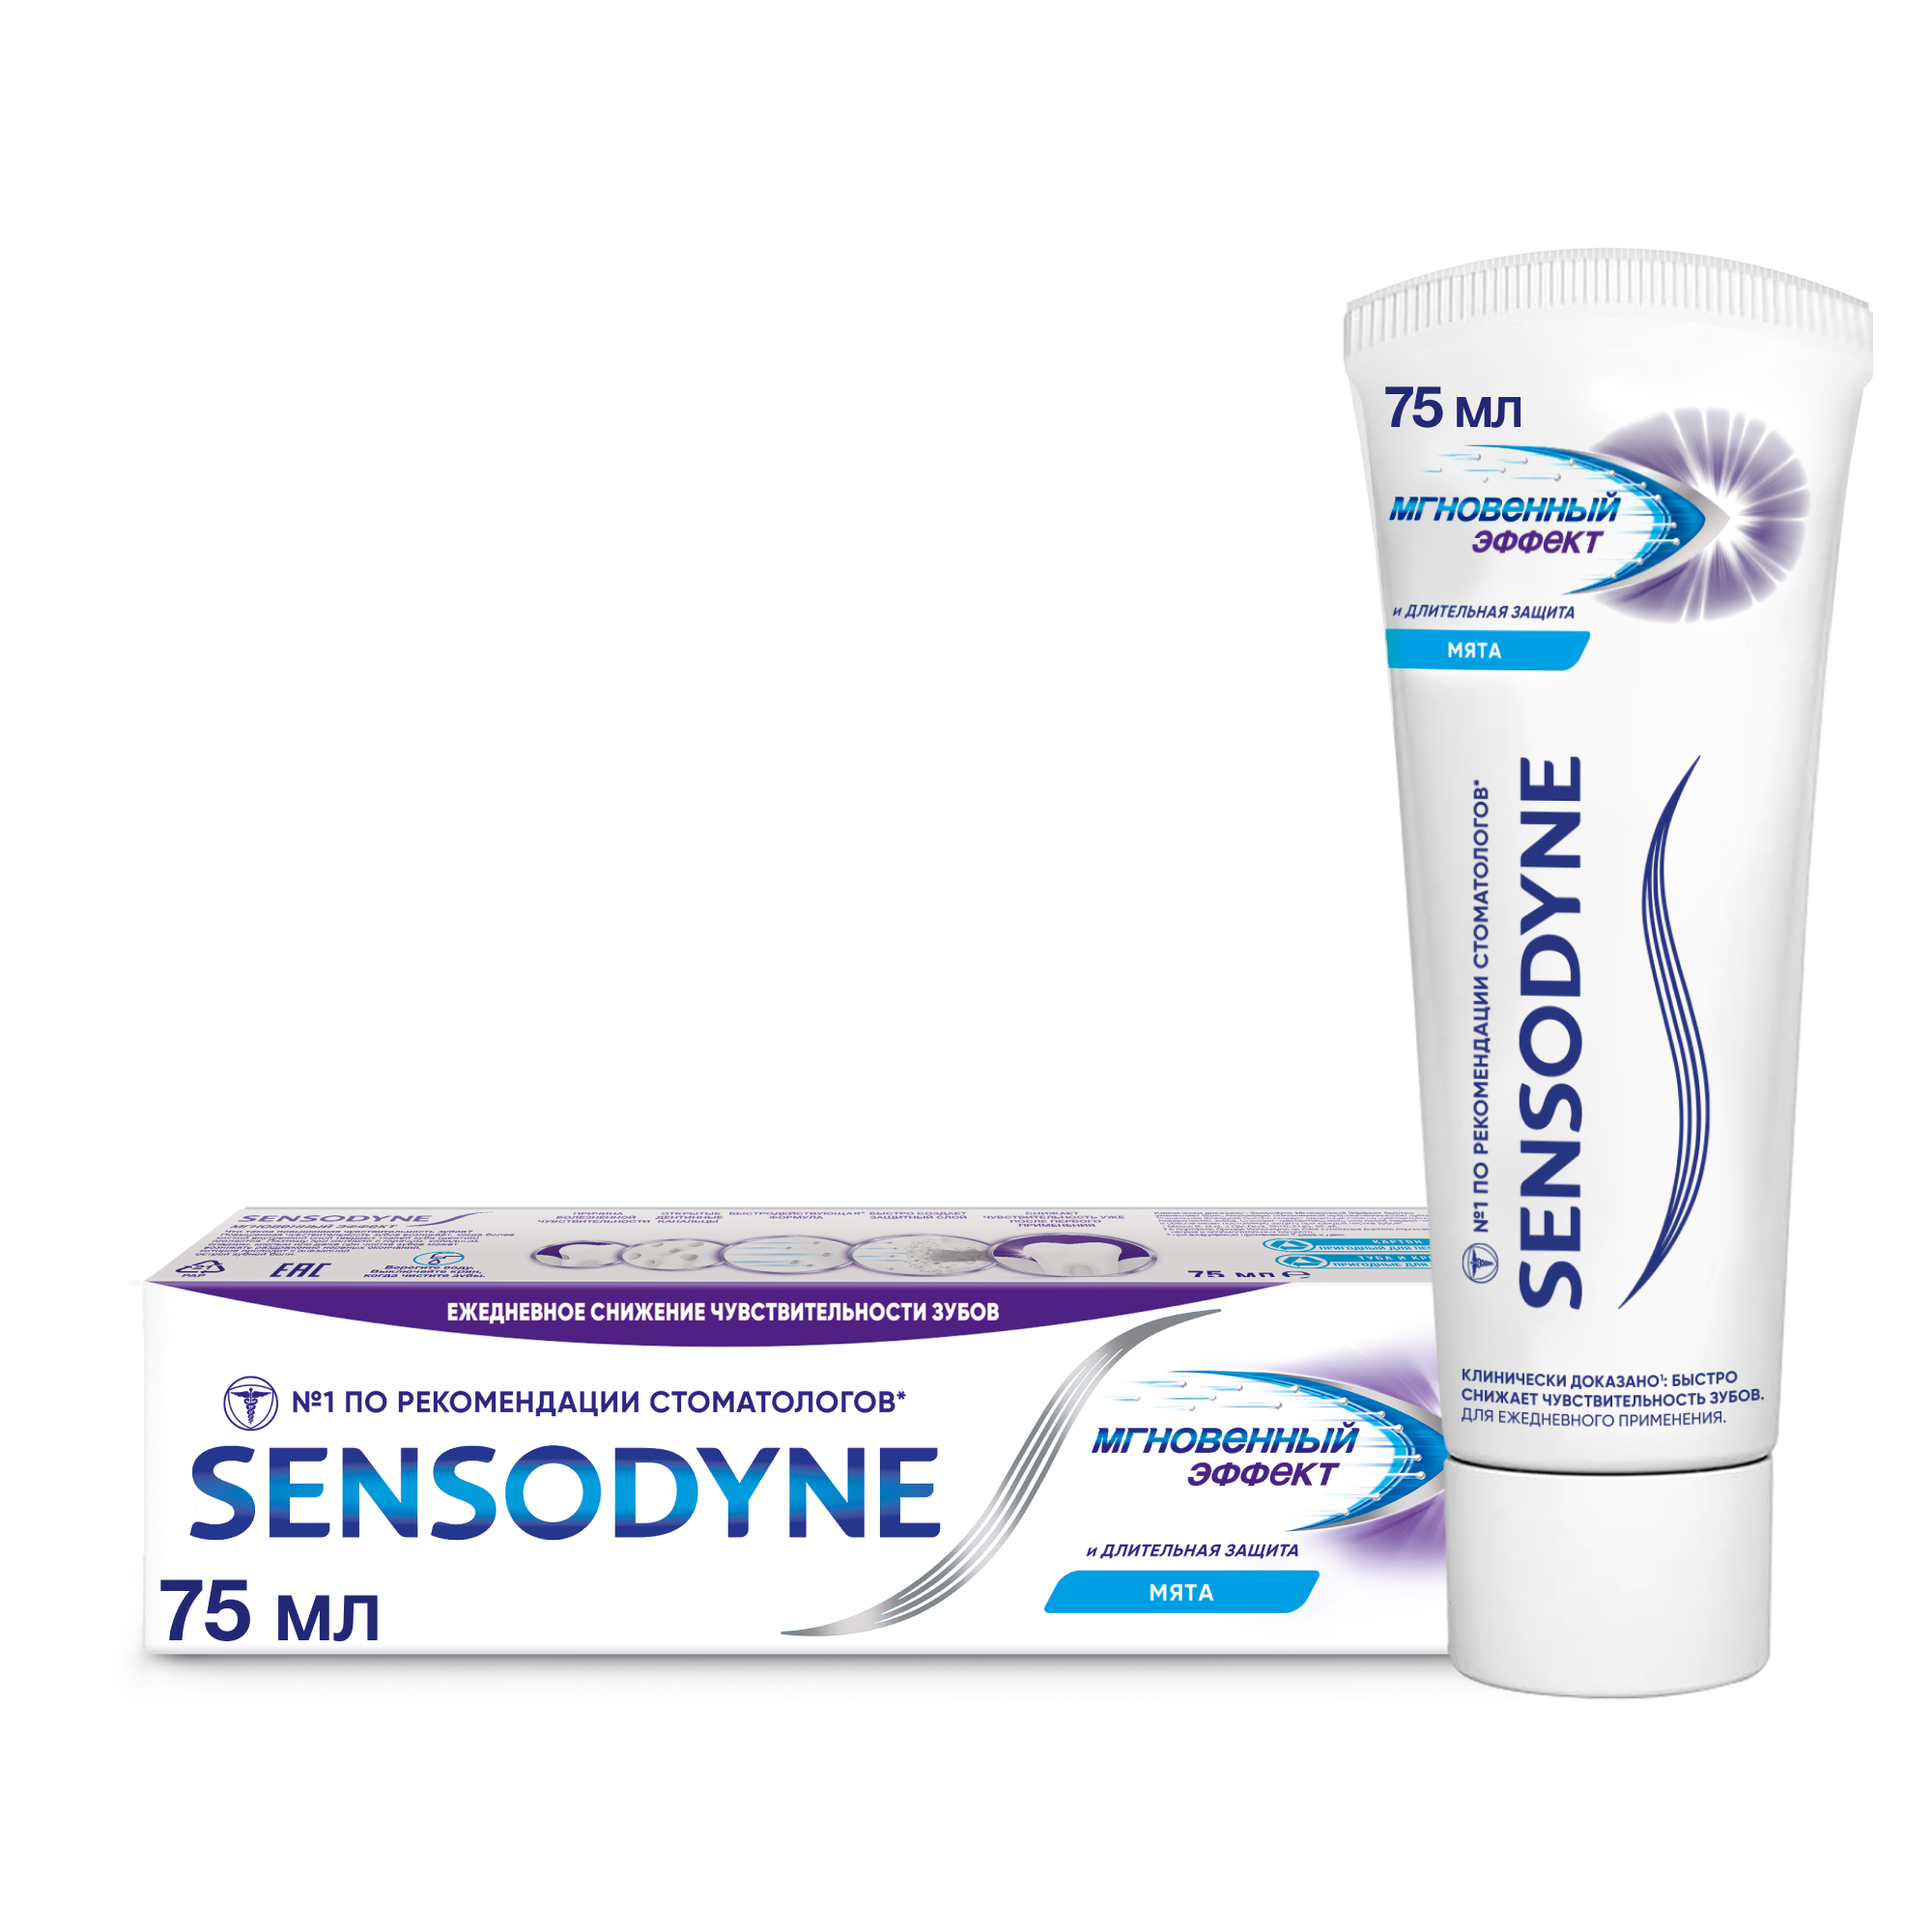 Зубная паста Sensodyne Мгновенный Эффект 75мл зубная паста sensodyne мгновенный эффект длительная защита 75 мл